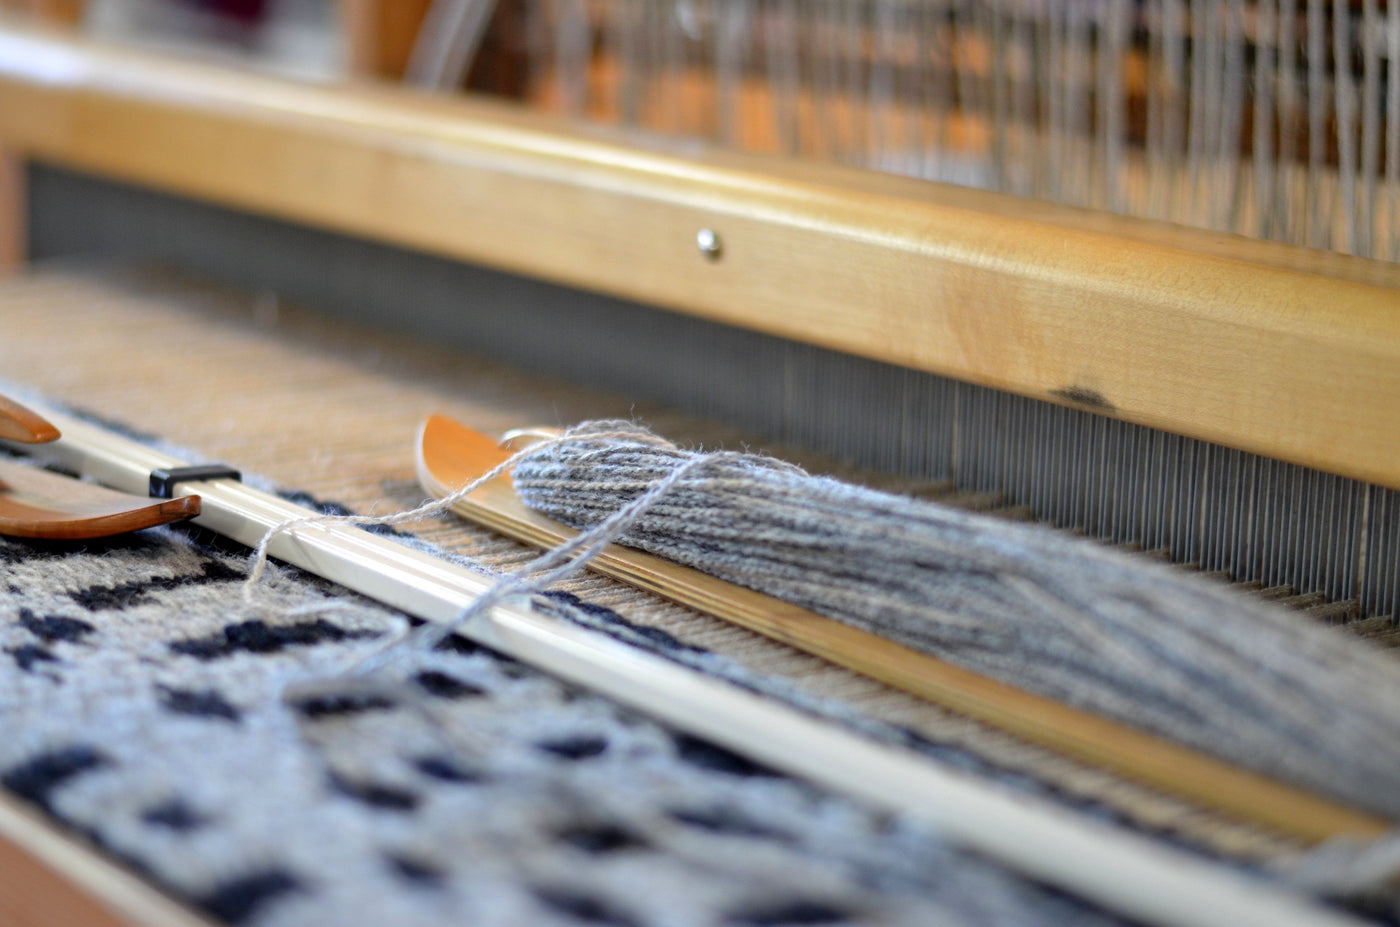 Harrisville Designs - Tapestry Loom – Friendly Loom